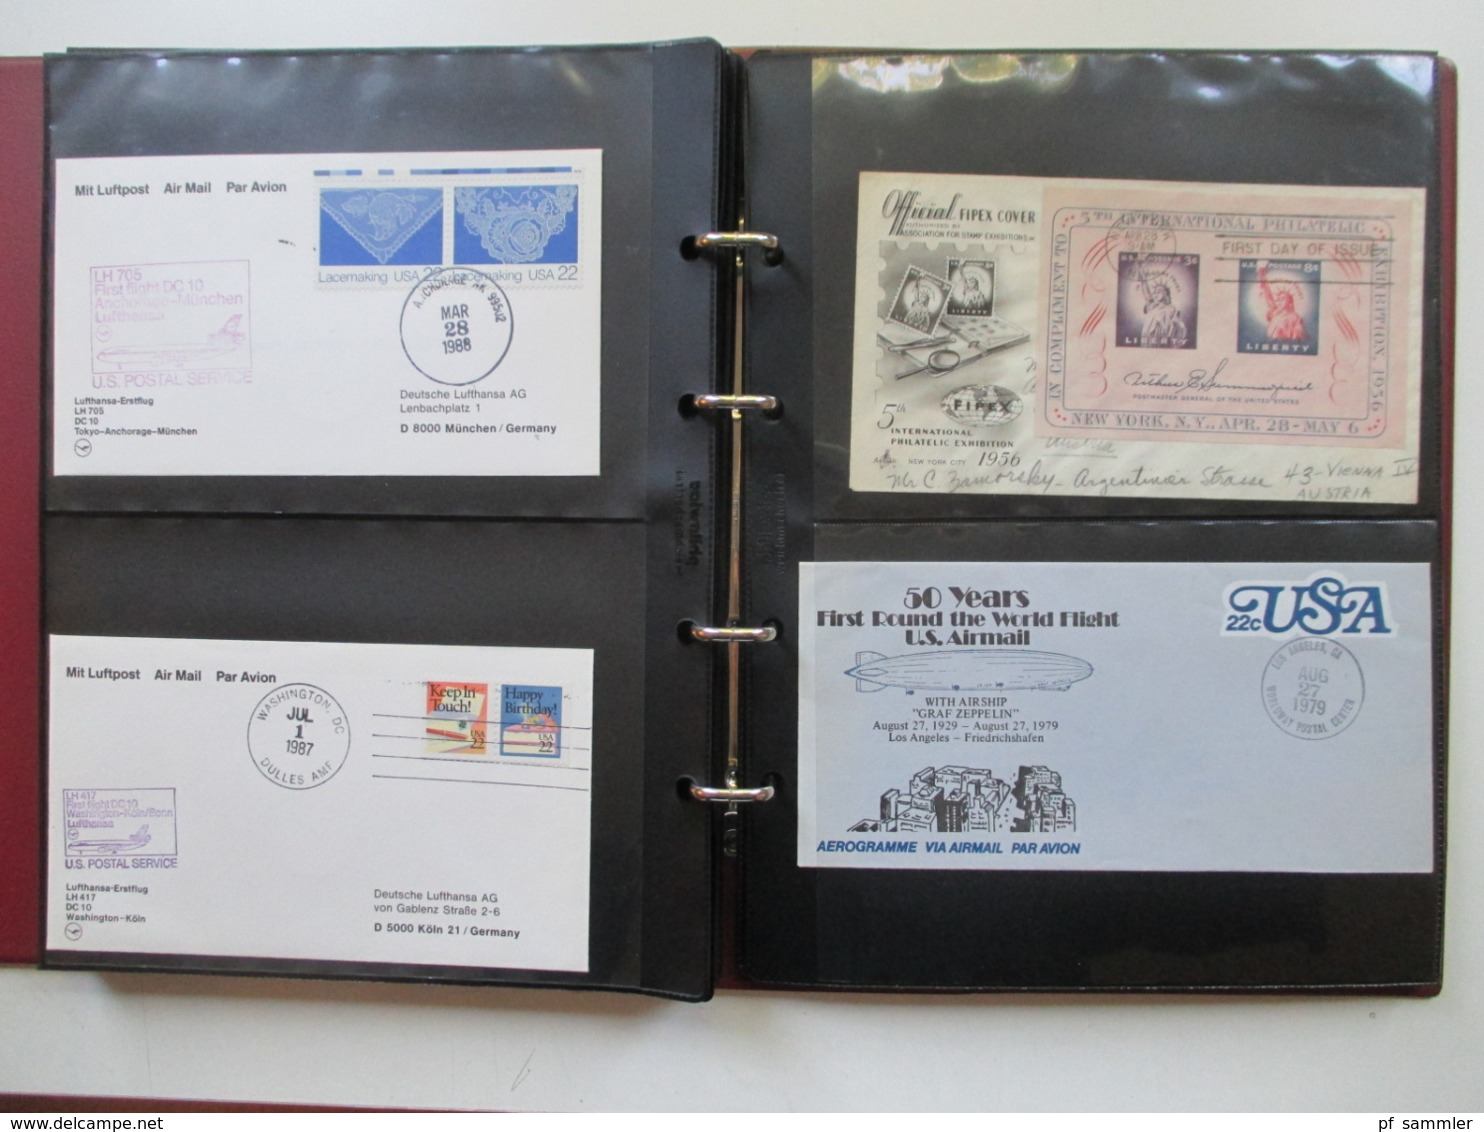 USA Belege Sammlung ab 1947 - 80er Jahre 249 Stk in 4 Alben! FDC / Flugpost / First Flight / Ganzsachen / Sonderbelege